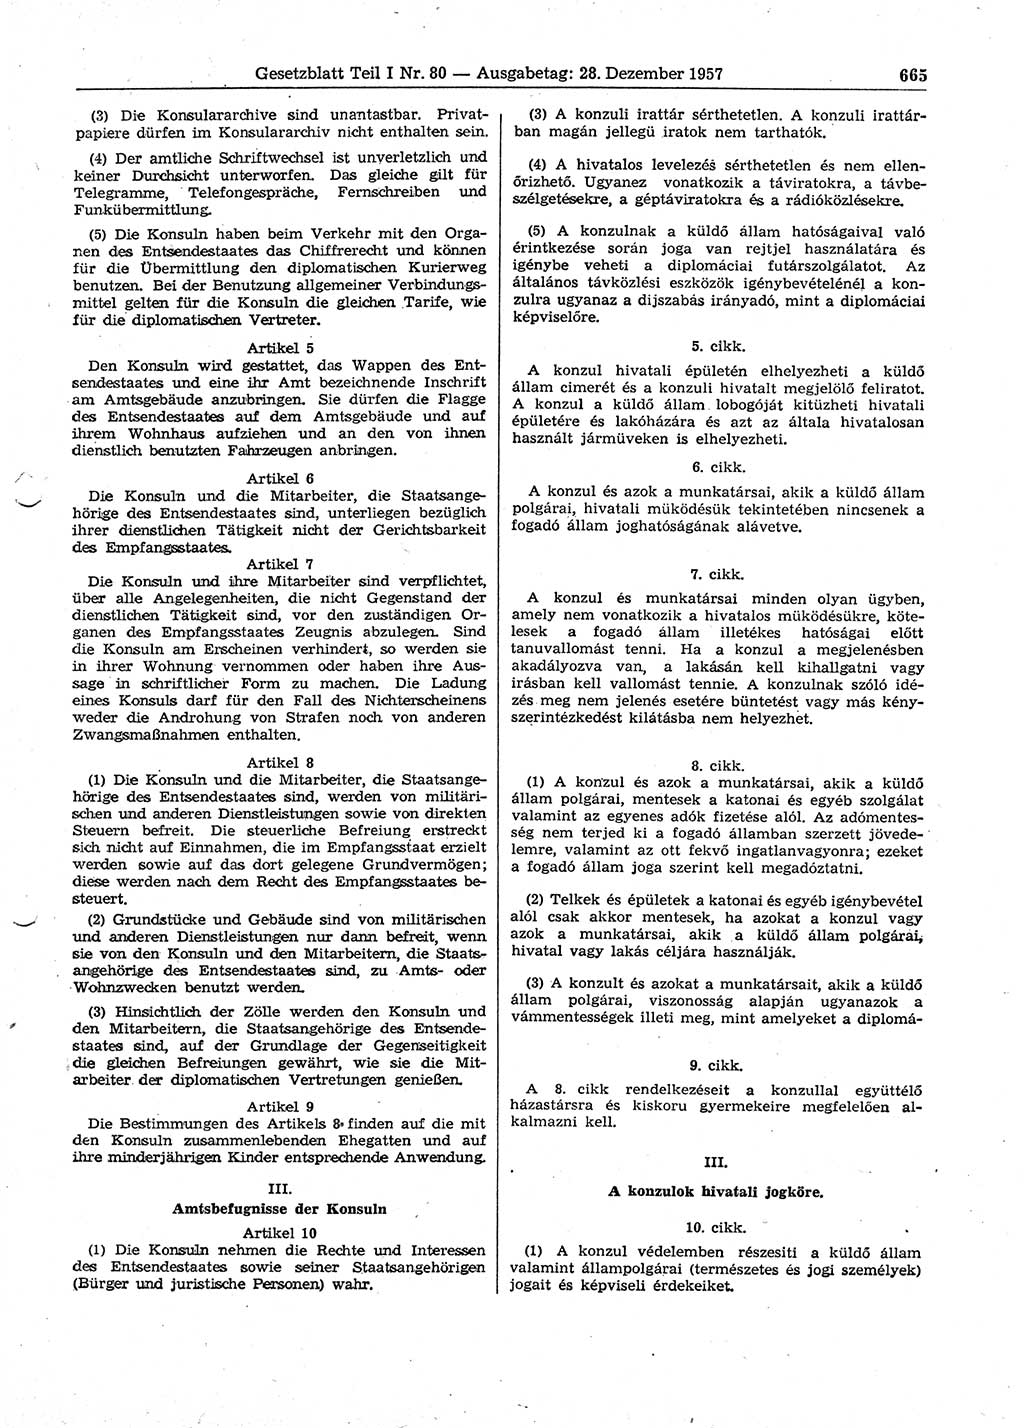 Gesetzblatt (GBl.) der Deutschen Demokratischen Republik (DDR) Teil Ⅰ 1957, Seite 665 (GBl. DDR Ⅰ 1957, S. 665)